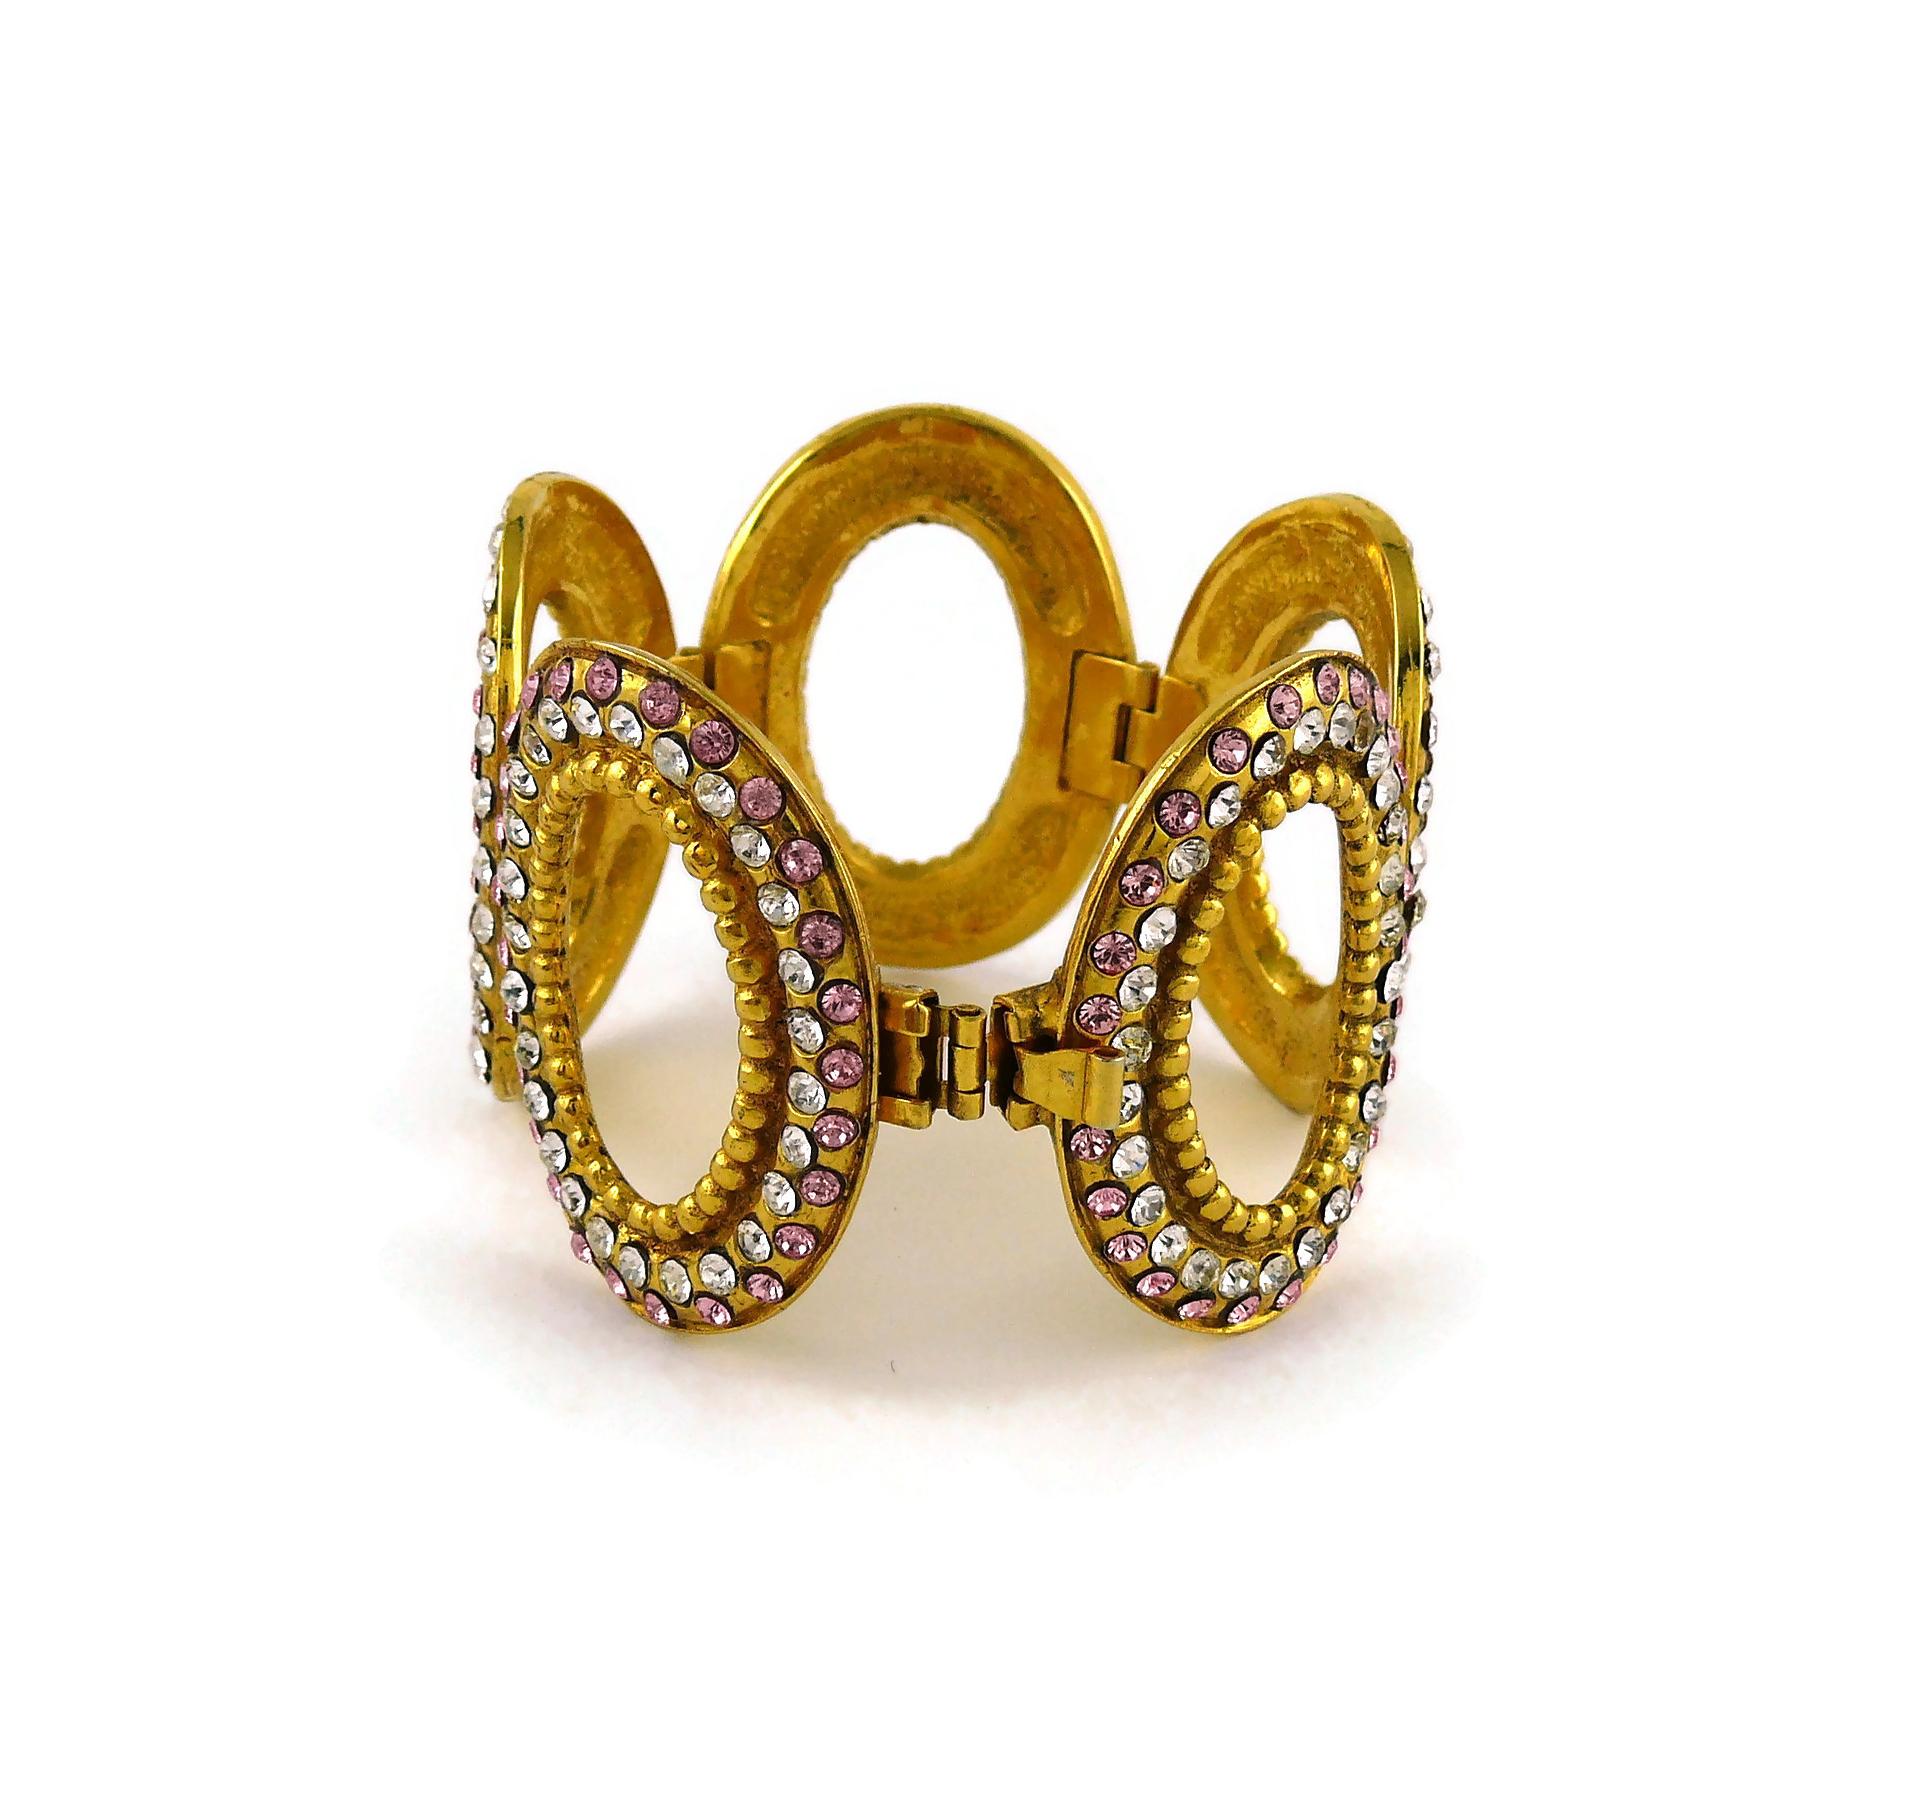 Christian Dior Boutique Vintage Jeweled Oval Link Bracelet 5